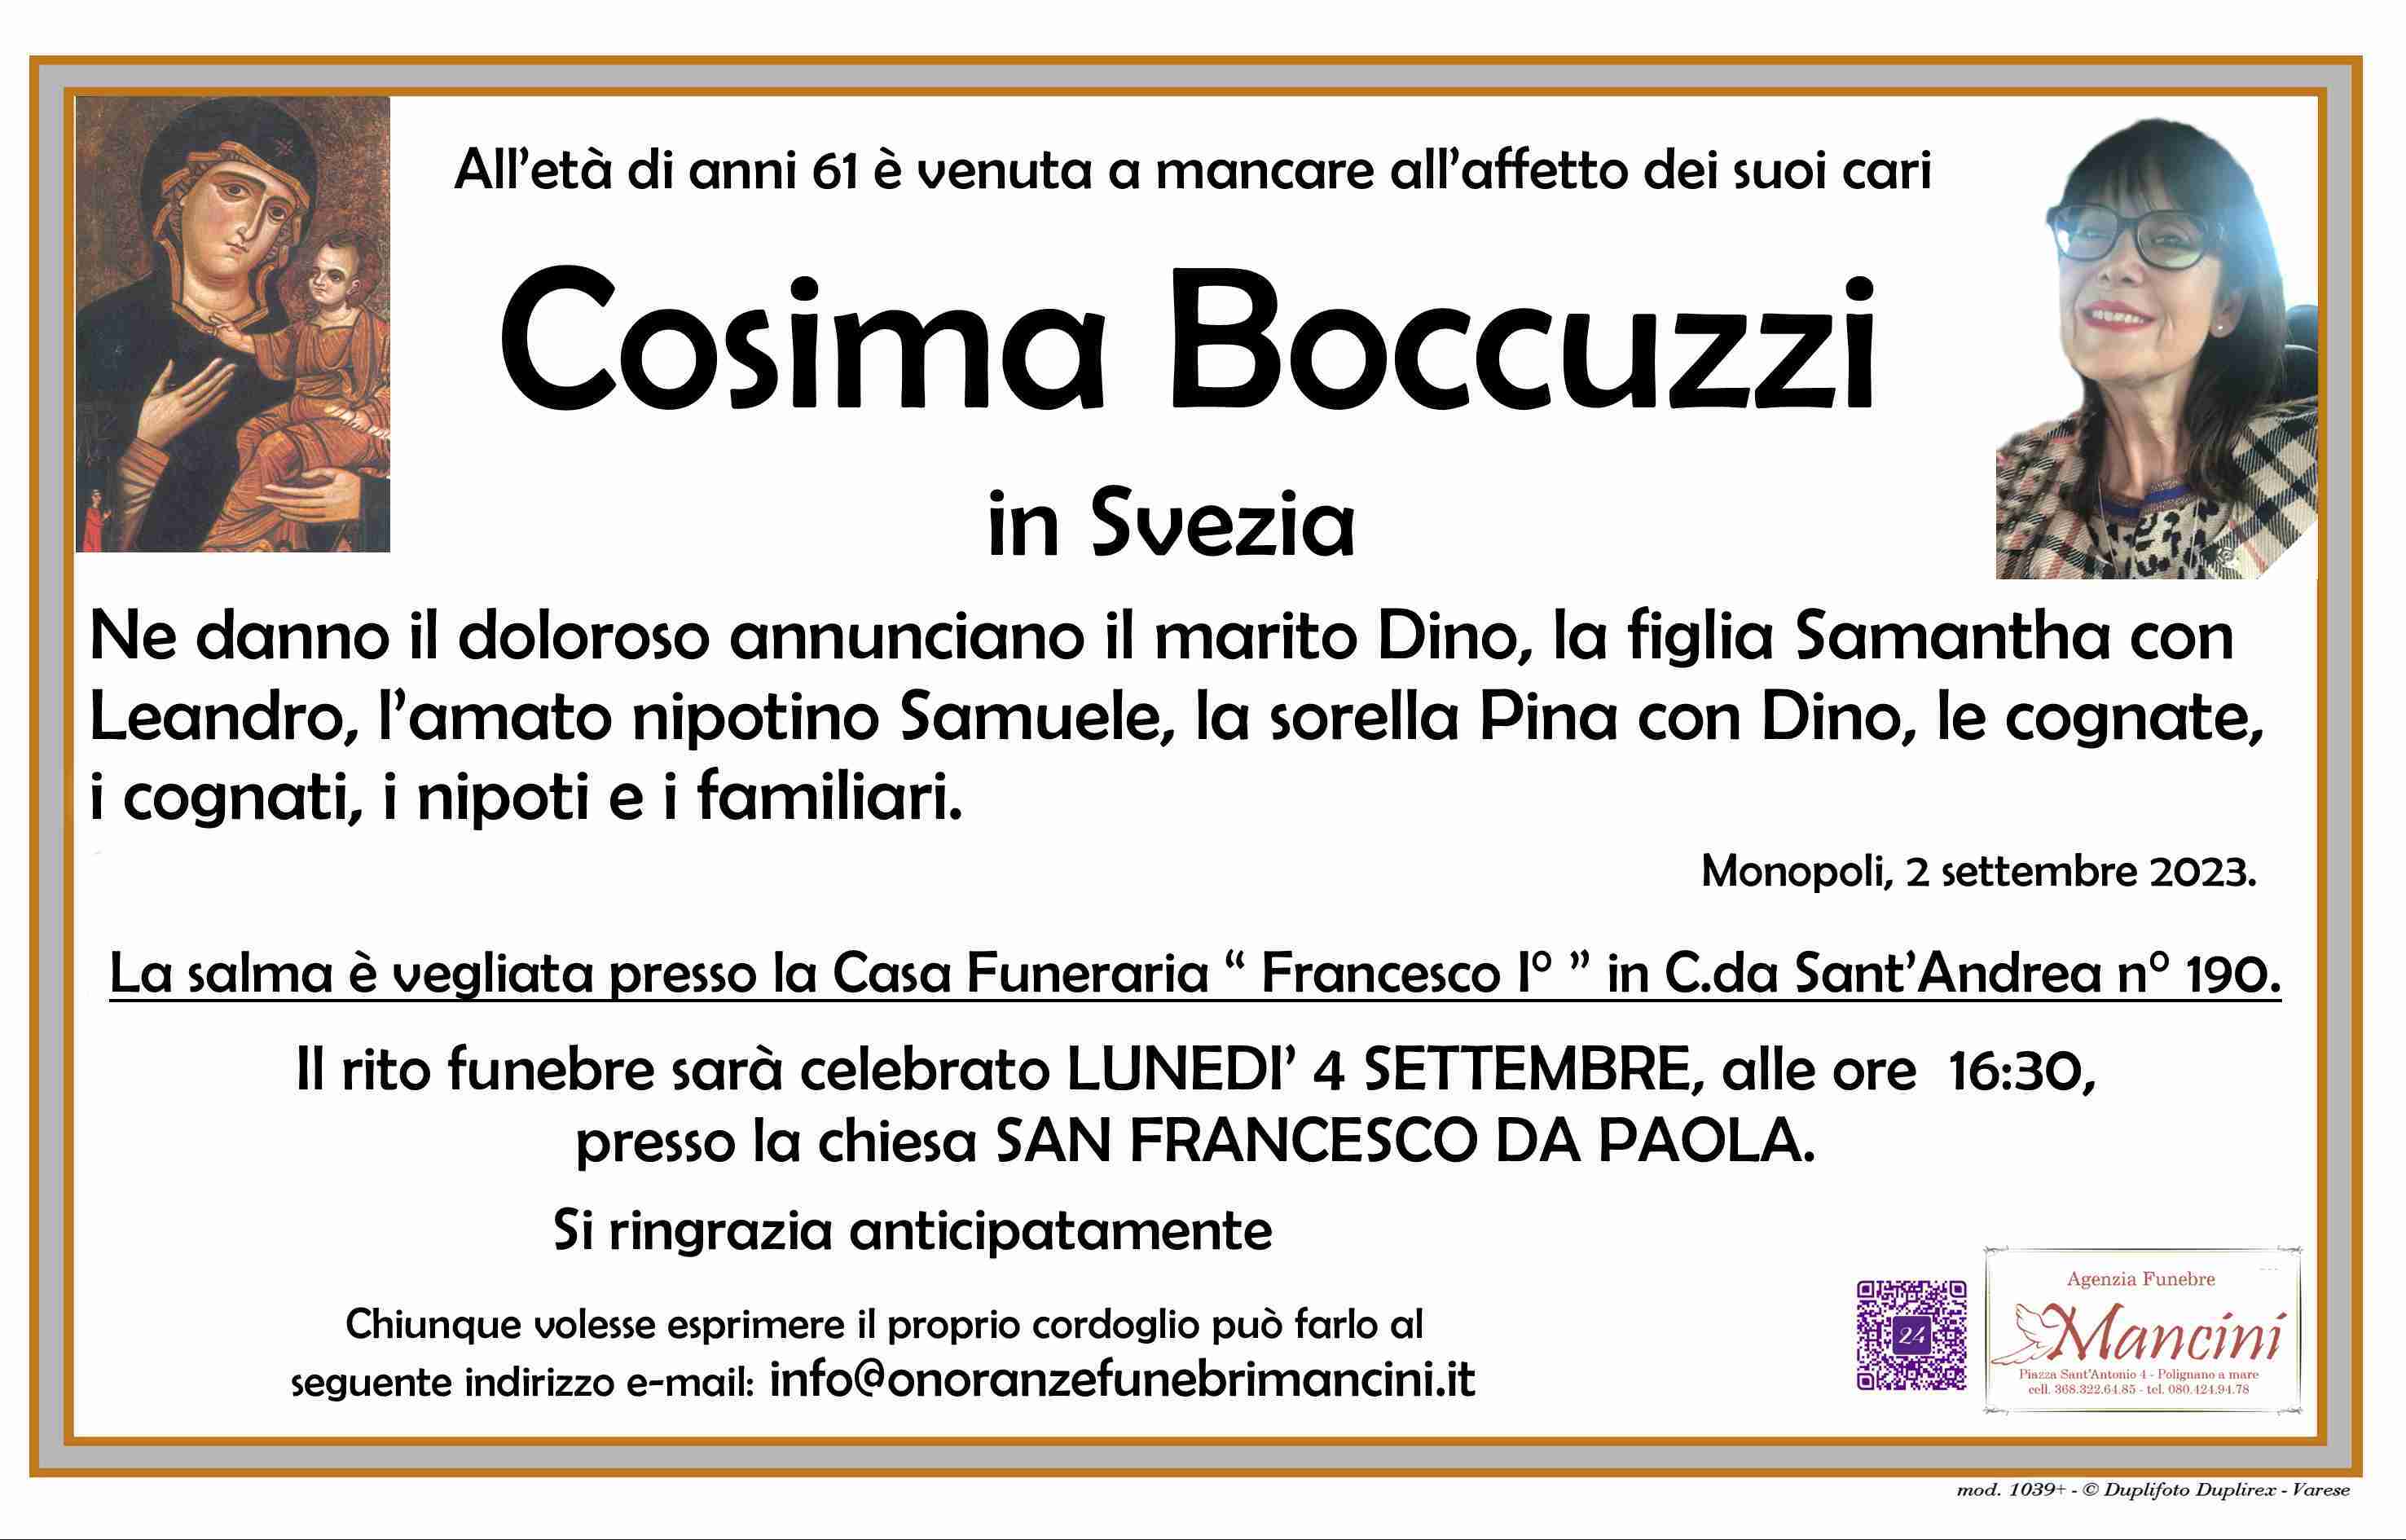 Cosima Boccuzzi